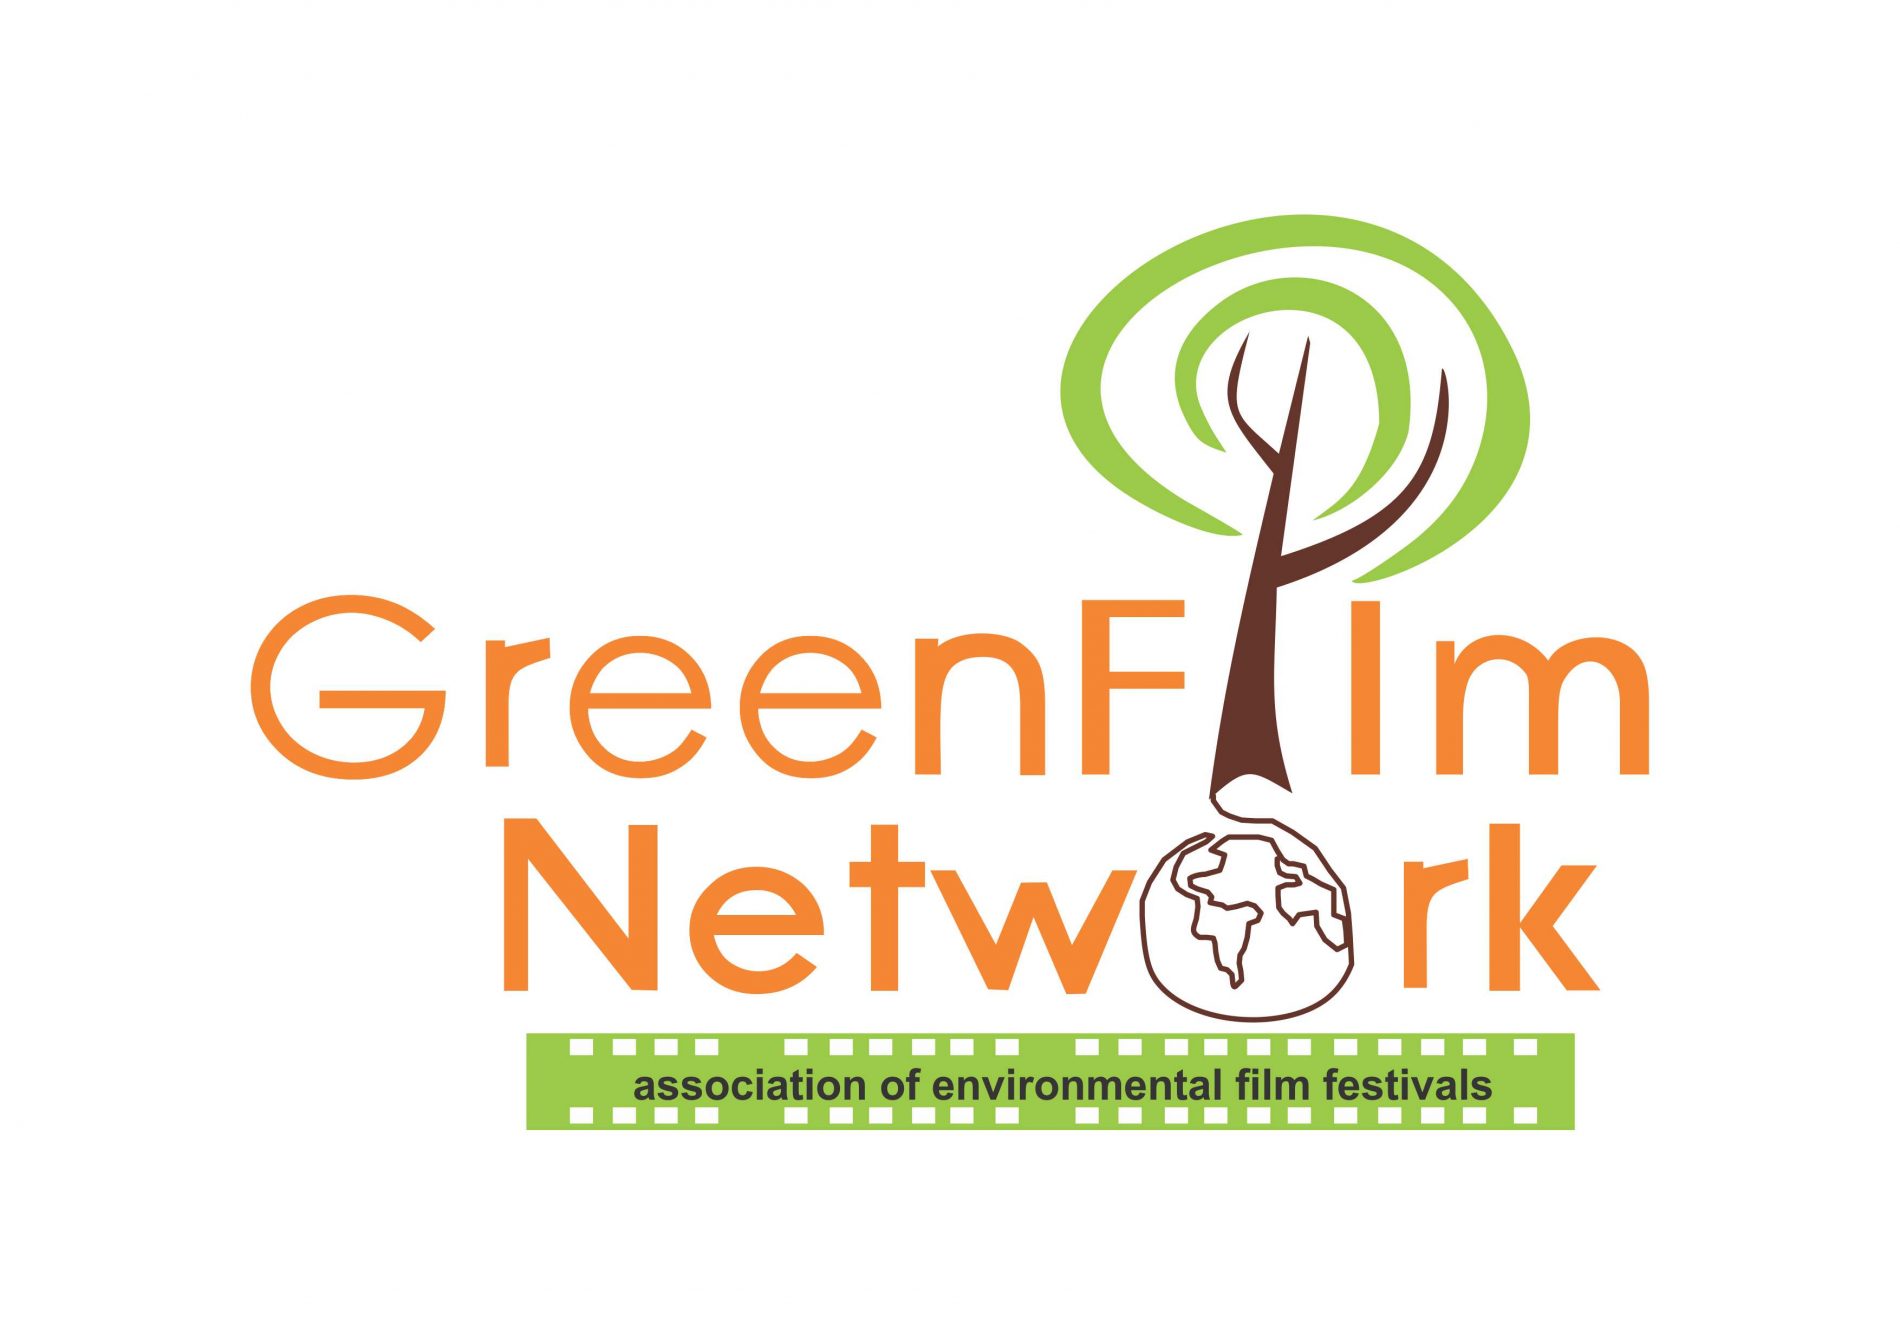 FESTCINEAMAZÔNIA PASSA A FAZER PARTE DA ORGANIZAÇÃO GREEN FILM NETWORK (GFN), A REDE CINEMATOGRÁFICA COM OS FESTIVAIS AMBIENTAIS MAIS IMPORTANTES DO MUNDO.